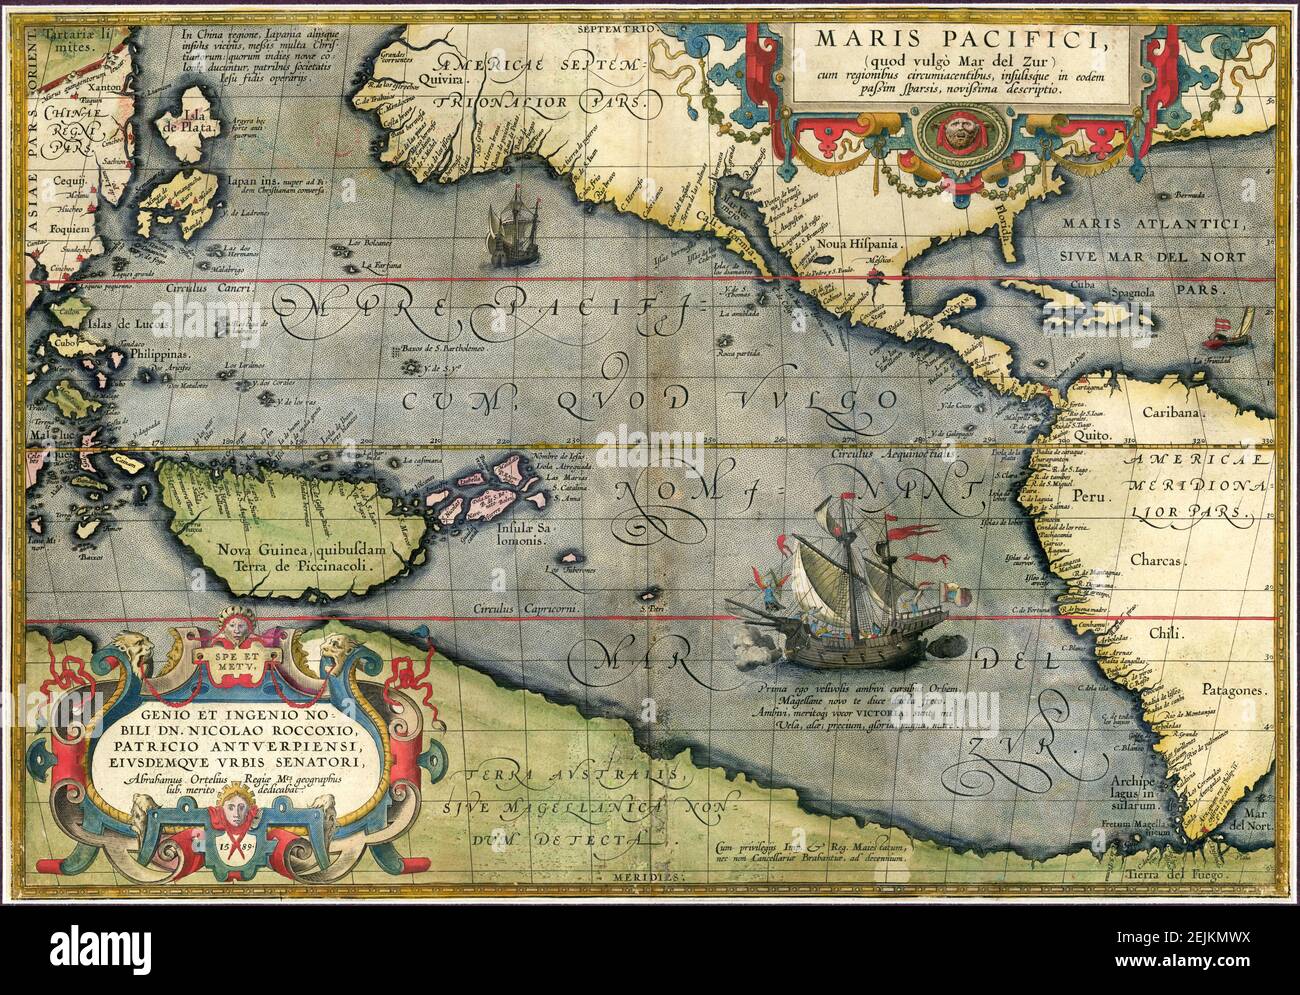 Maris Pacifici von Abraham Ortelius. Diese Karte wurde 1589 in seinem Theatrum Orbis Terrarum veröffentlicht. Es war nicht nur die erste gedruckte Karte des Pazifiks, sondern zeigte auch zum ersten Mal Amerika. Stockfoto